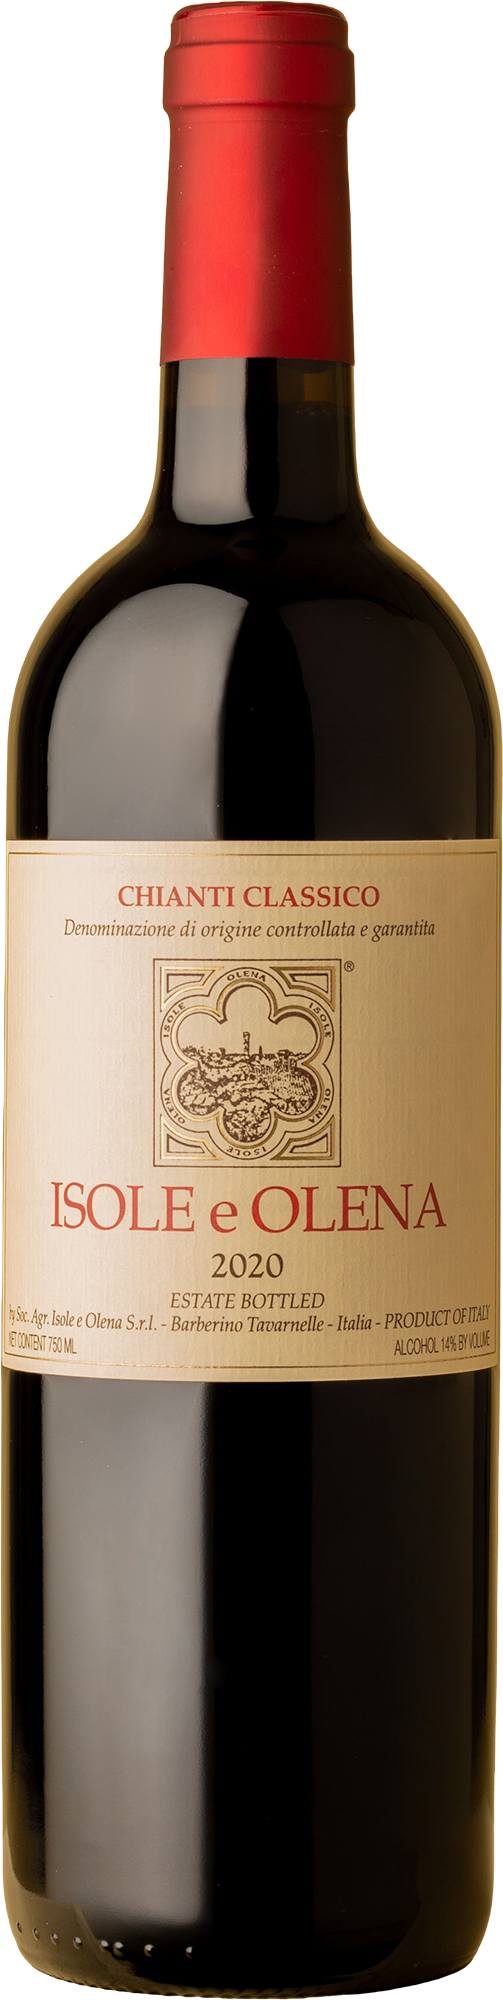 Isole e Olena - Chianti Classico 2020 Red Wine